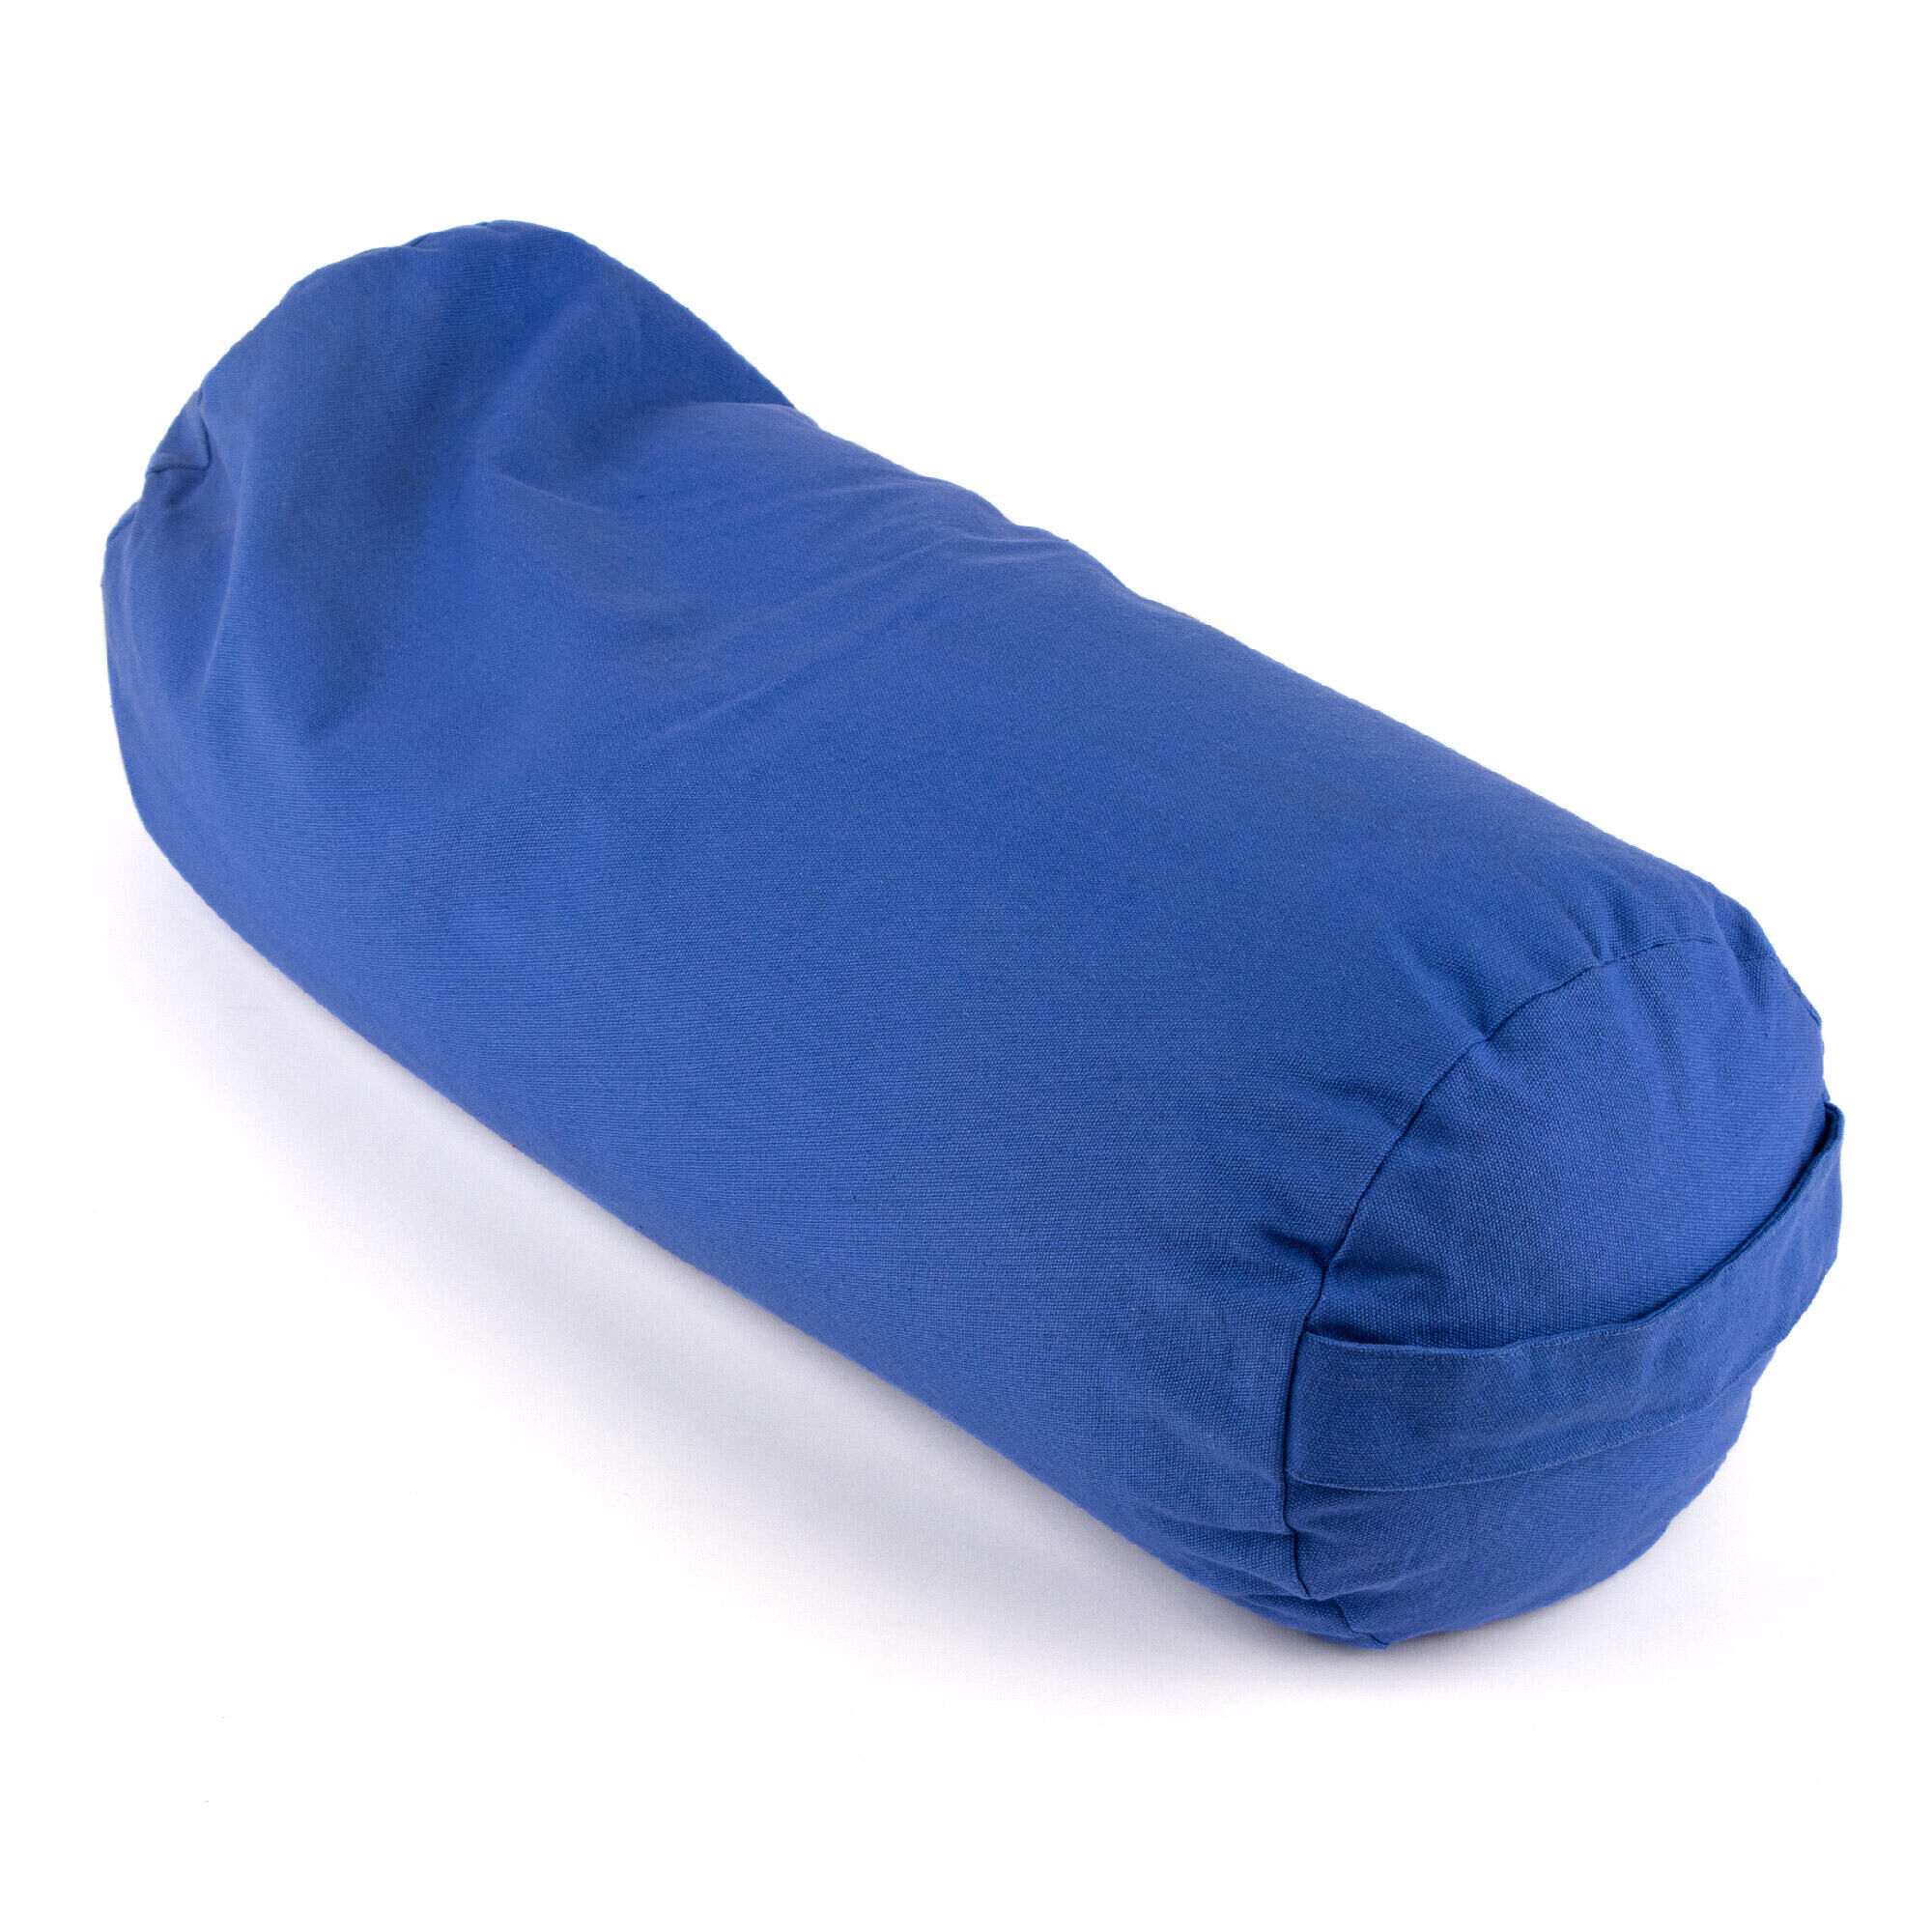 MYGA Myga Buckwheat Support Bolster Pillow - Blue